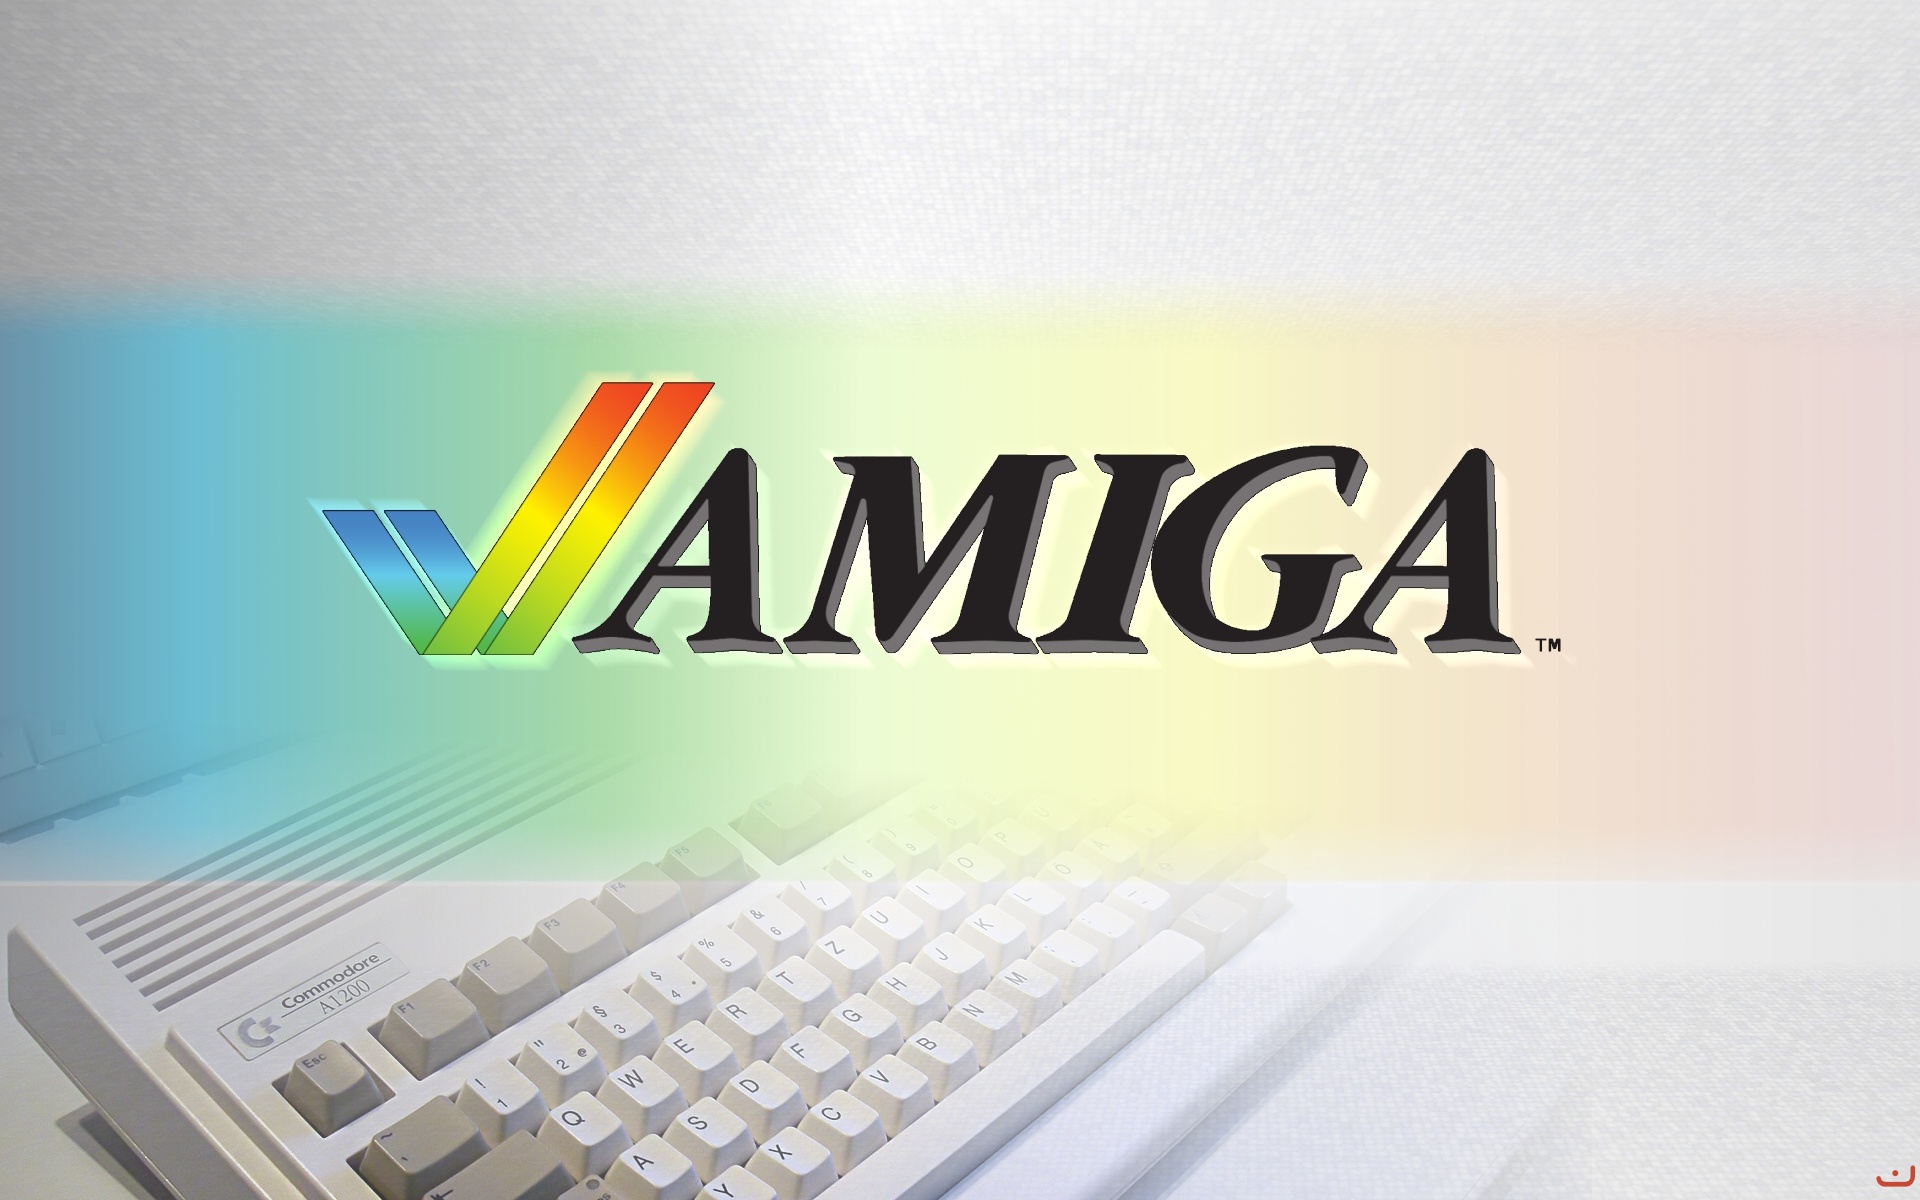 Image: Amiga 1200 wallpaper Desktop Wallpaper